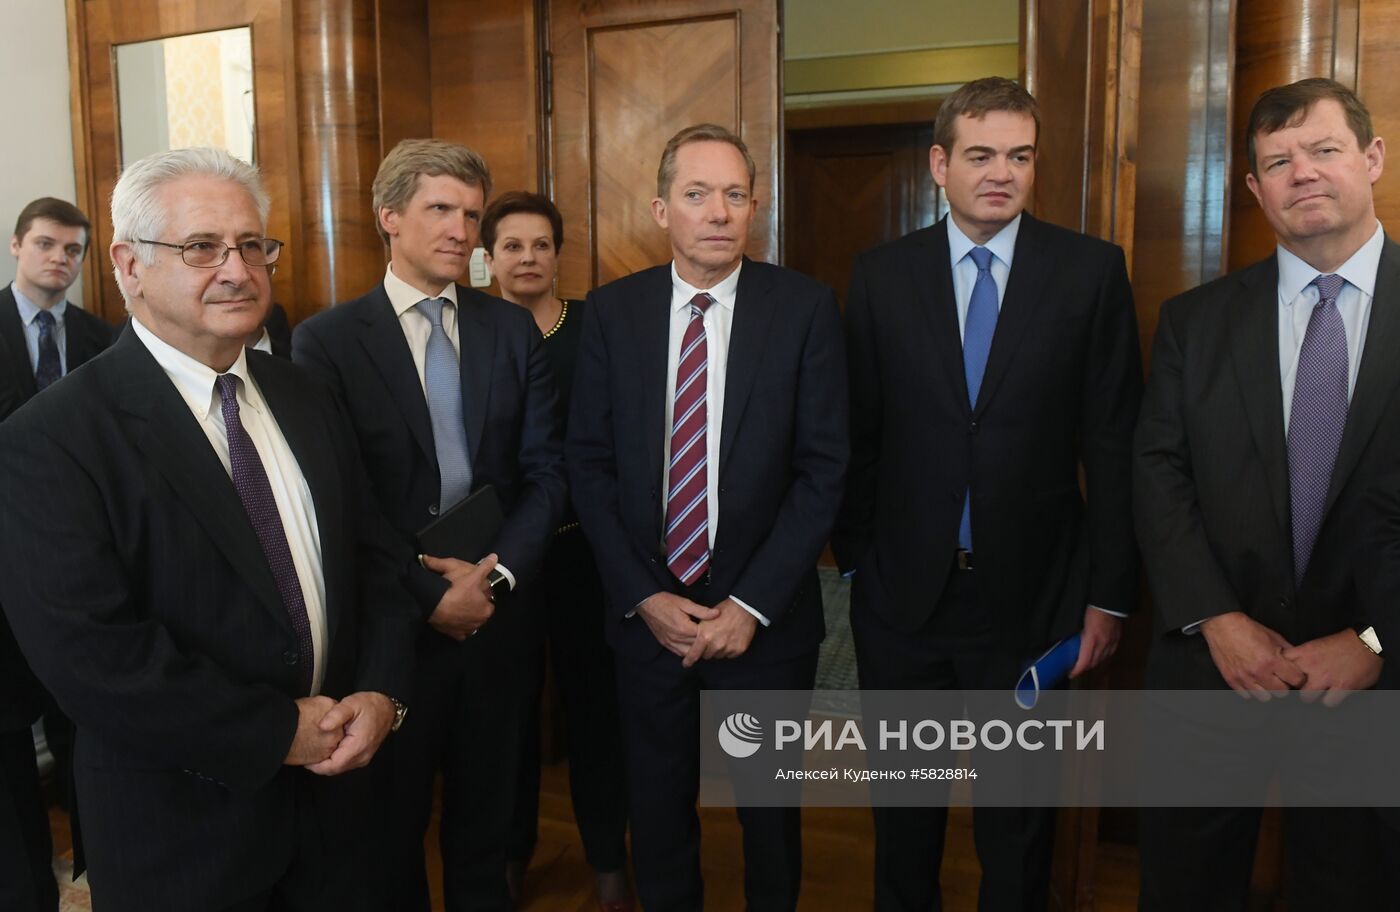 Встреча главы МИД РФ С. Лаврова с делегацией Американской торговой палаты